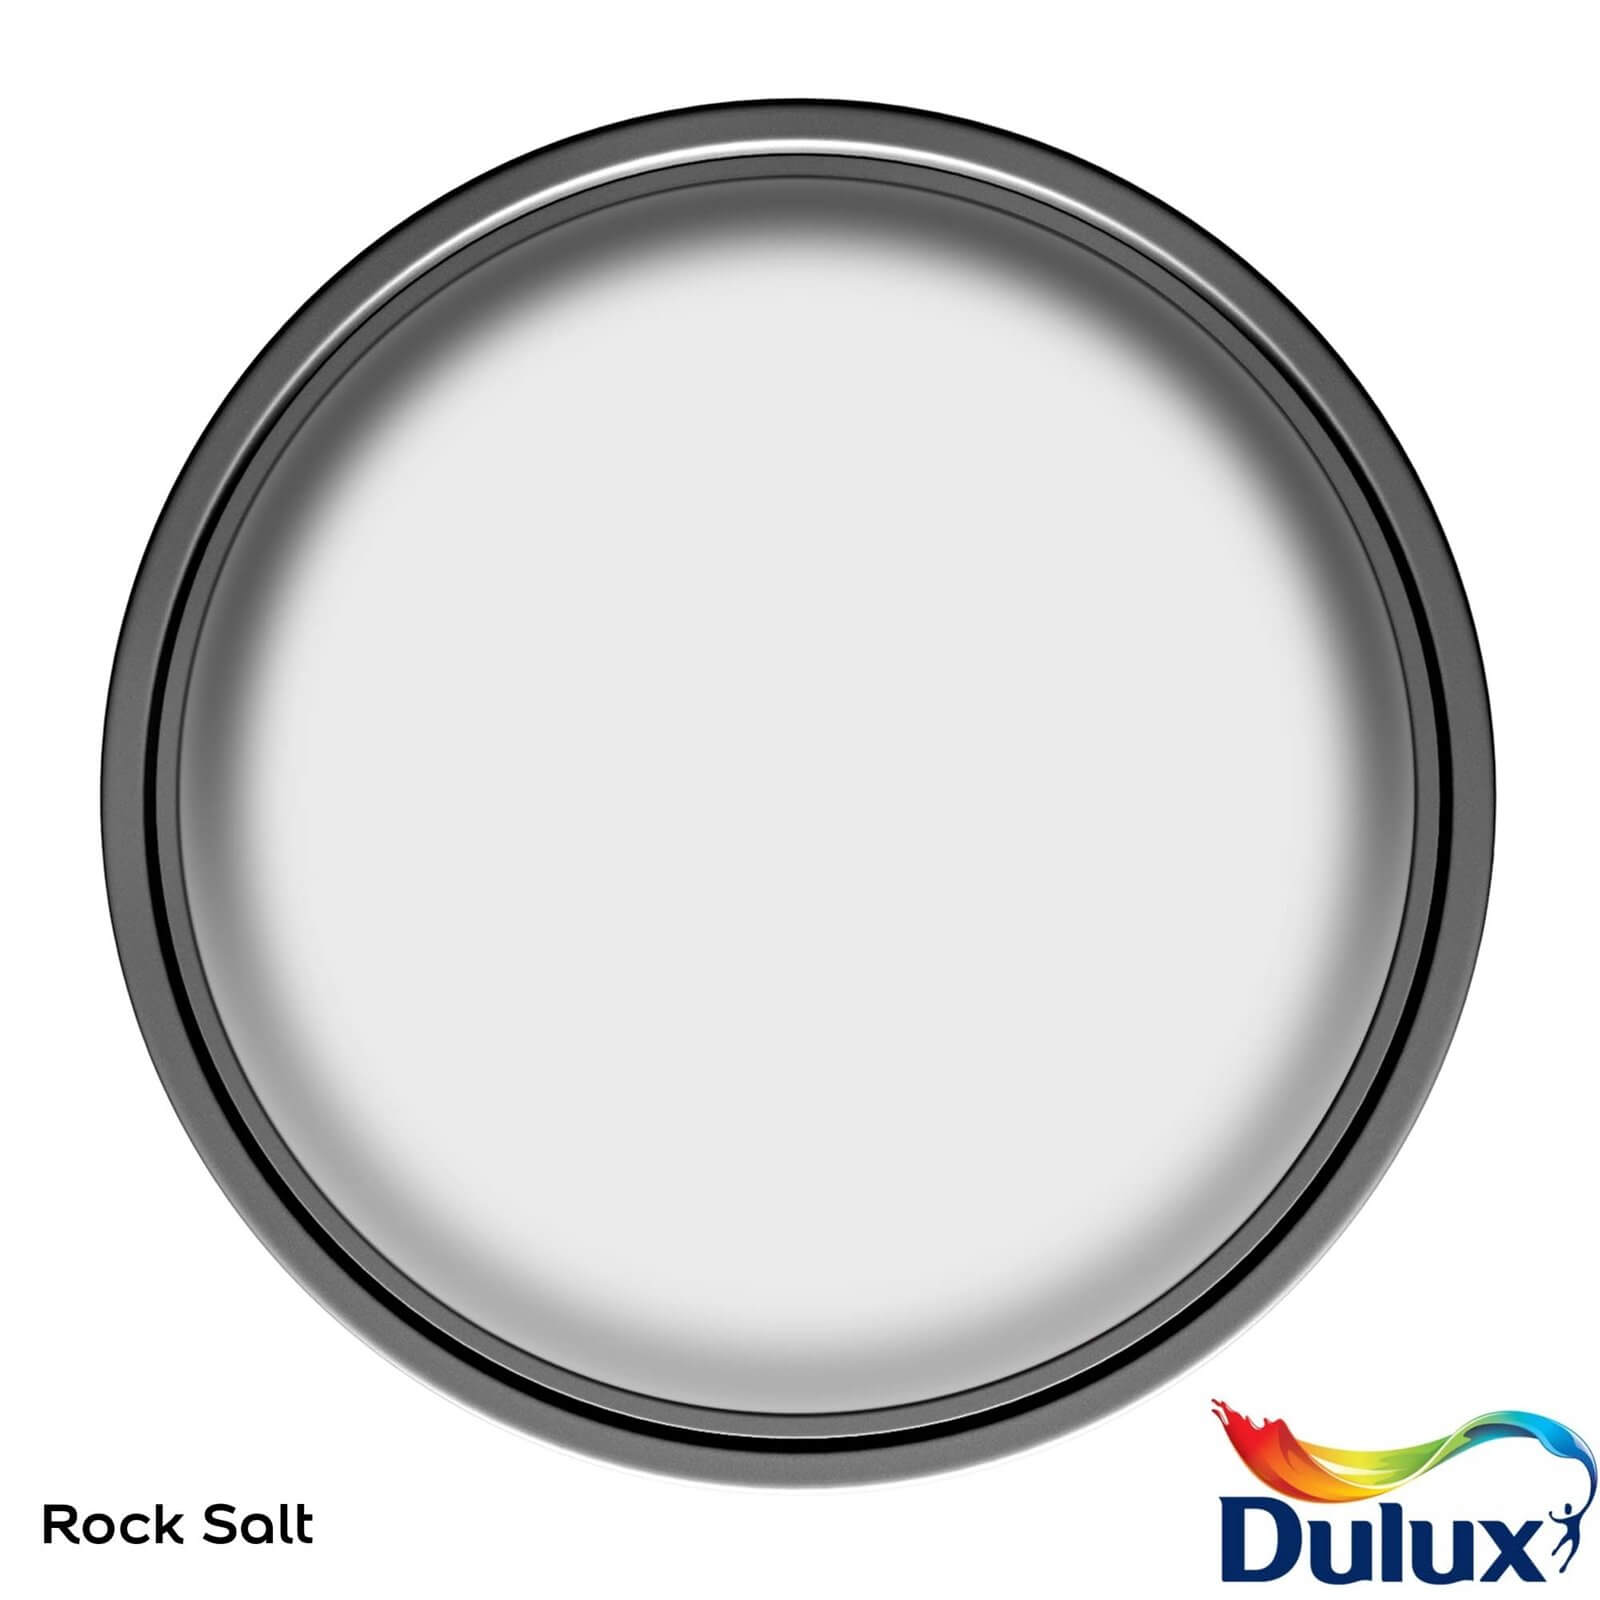 Dulux Matt Emulsion Paint Rock Salt - 5L